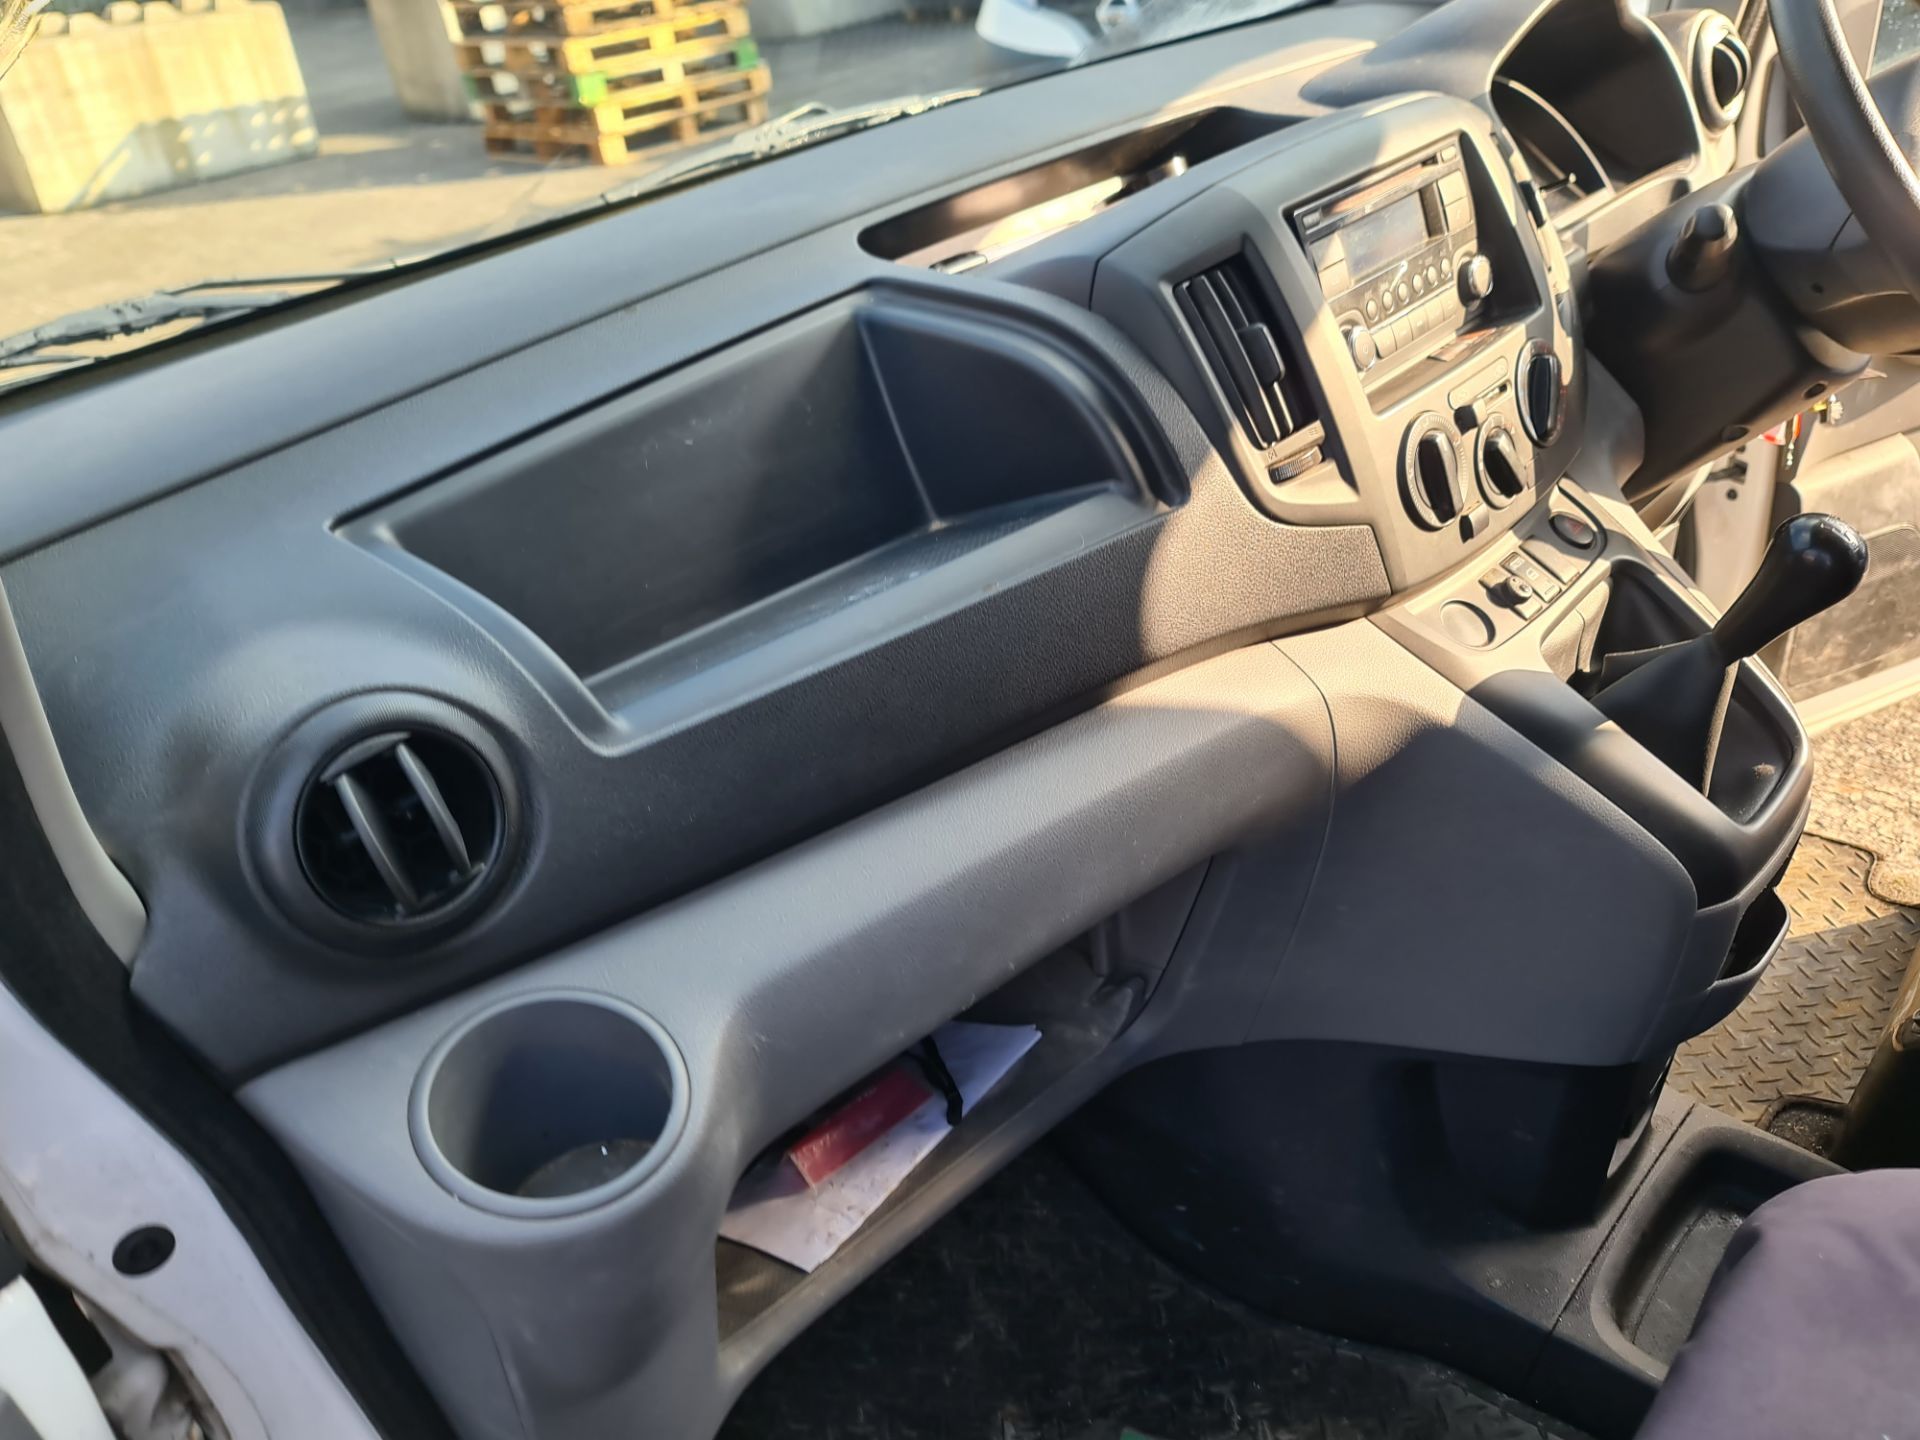 2018 Nissan NV200 Acenta DCI car derived van - Image 75 of 93